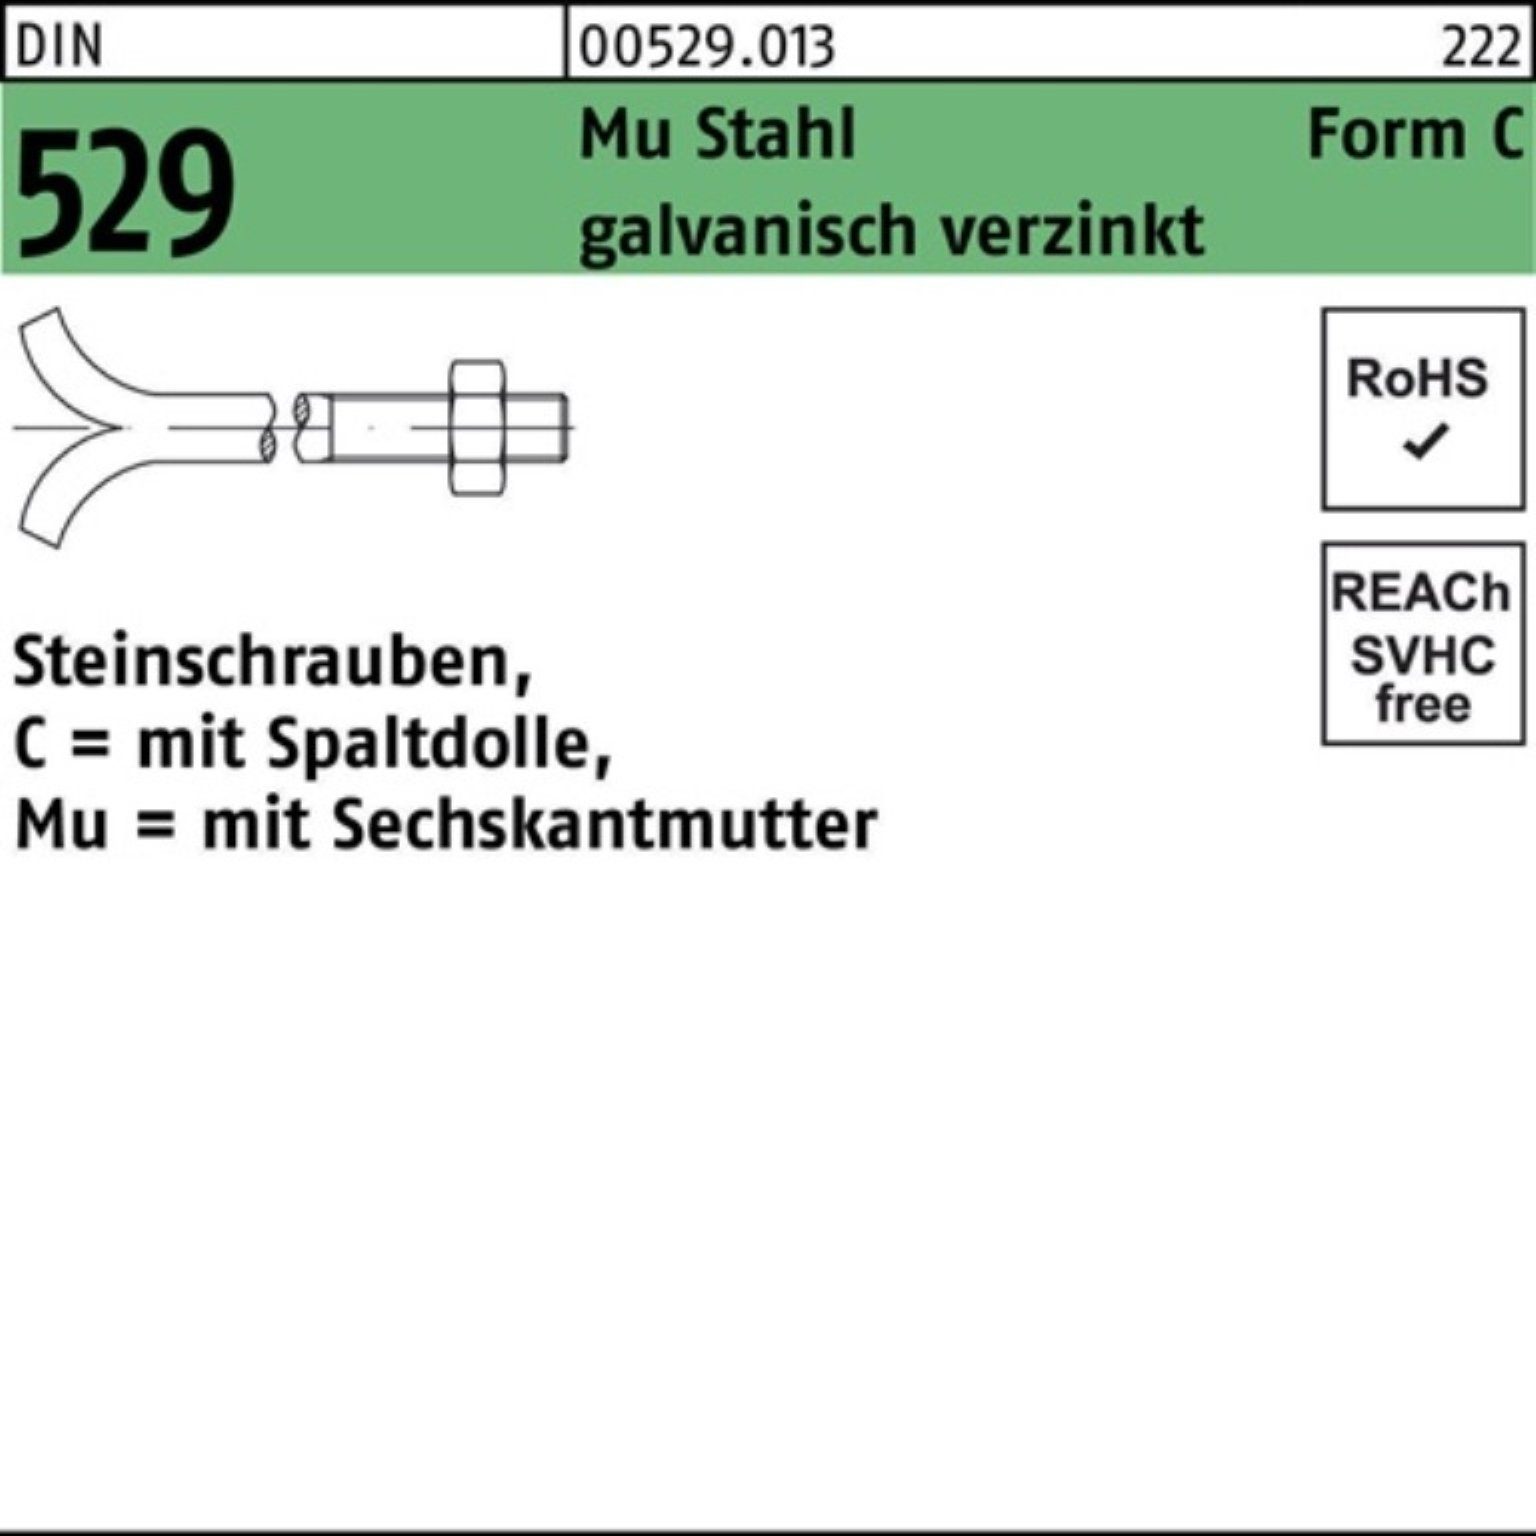 Reyher Schraube 100er Pack Steinschraube 3. CM Spaltdolle/6-ktmutter 10x160 Mu DIN 529